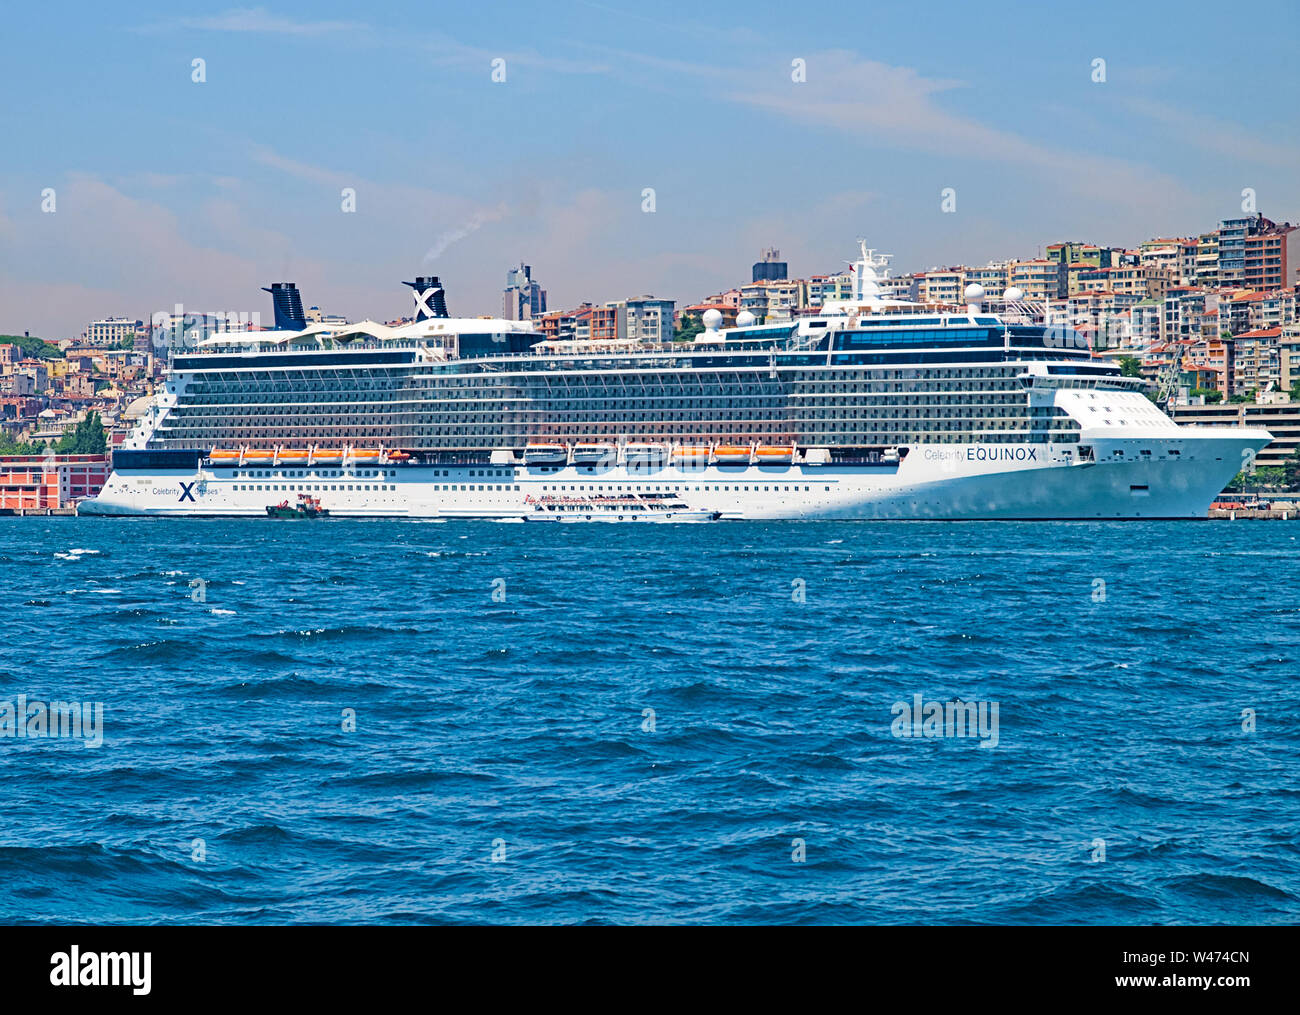 Istanbul, Turkey - 05/28/2010: Large cruise ship named 'Celebrity EQUINOX' at Istanbul coast, Turkey. Stock Photo